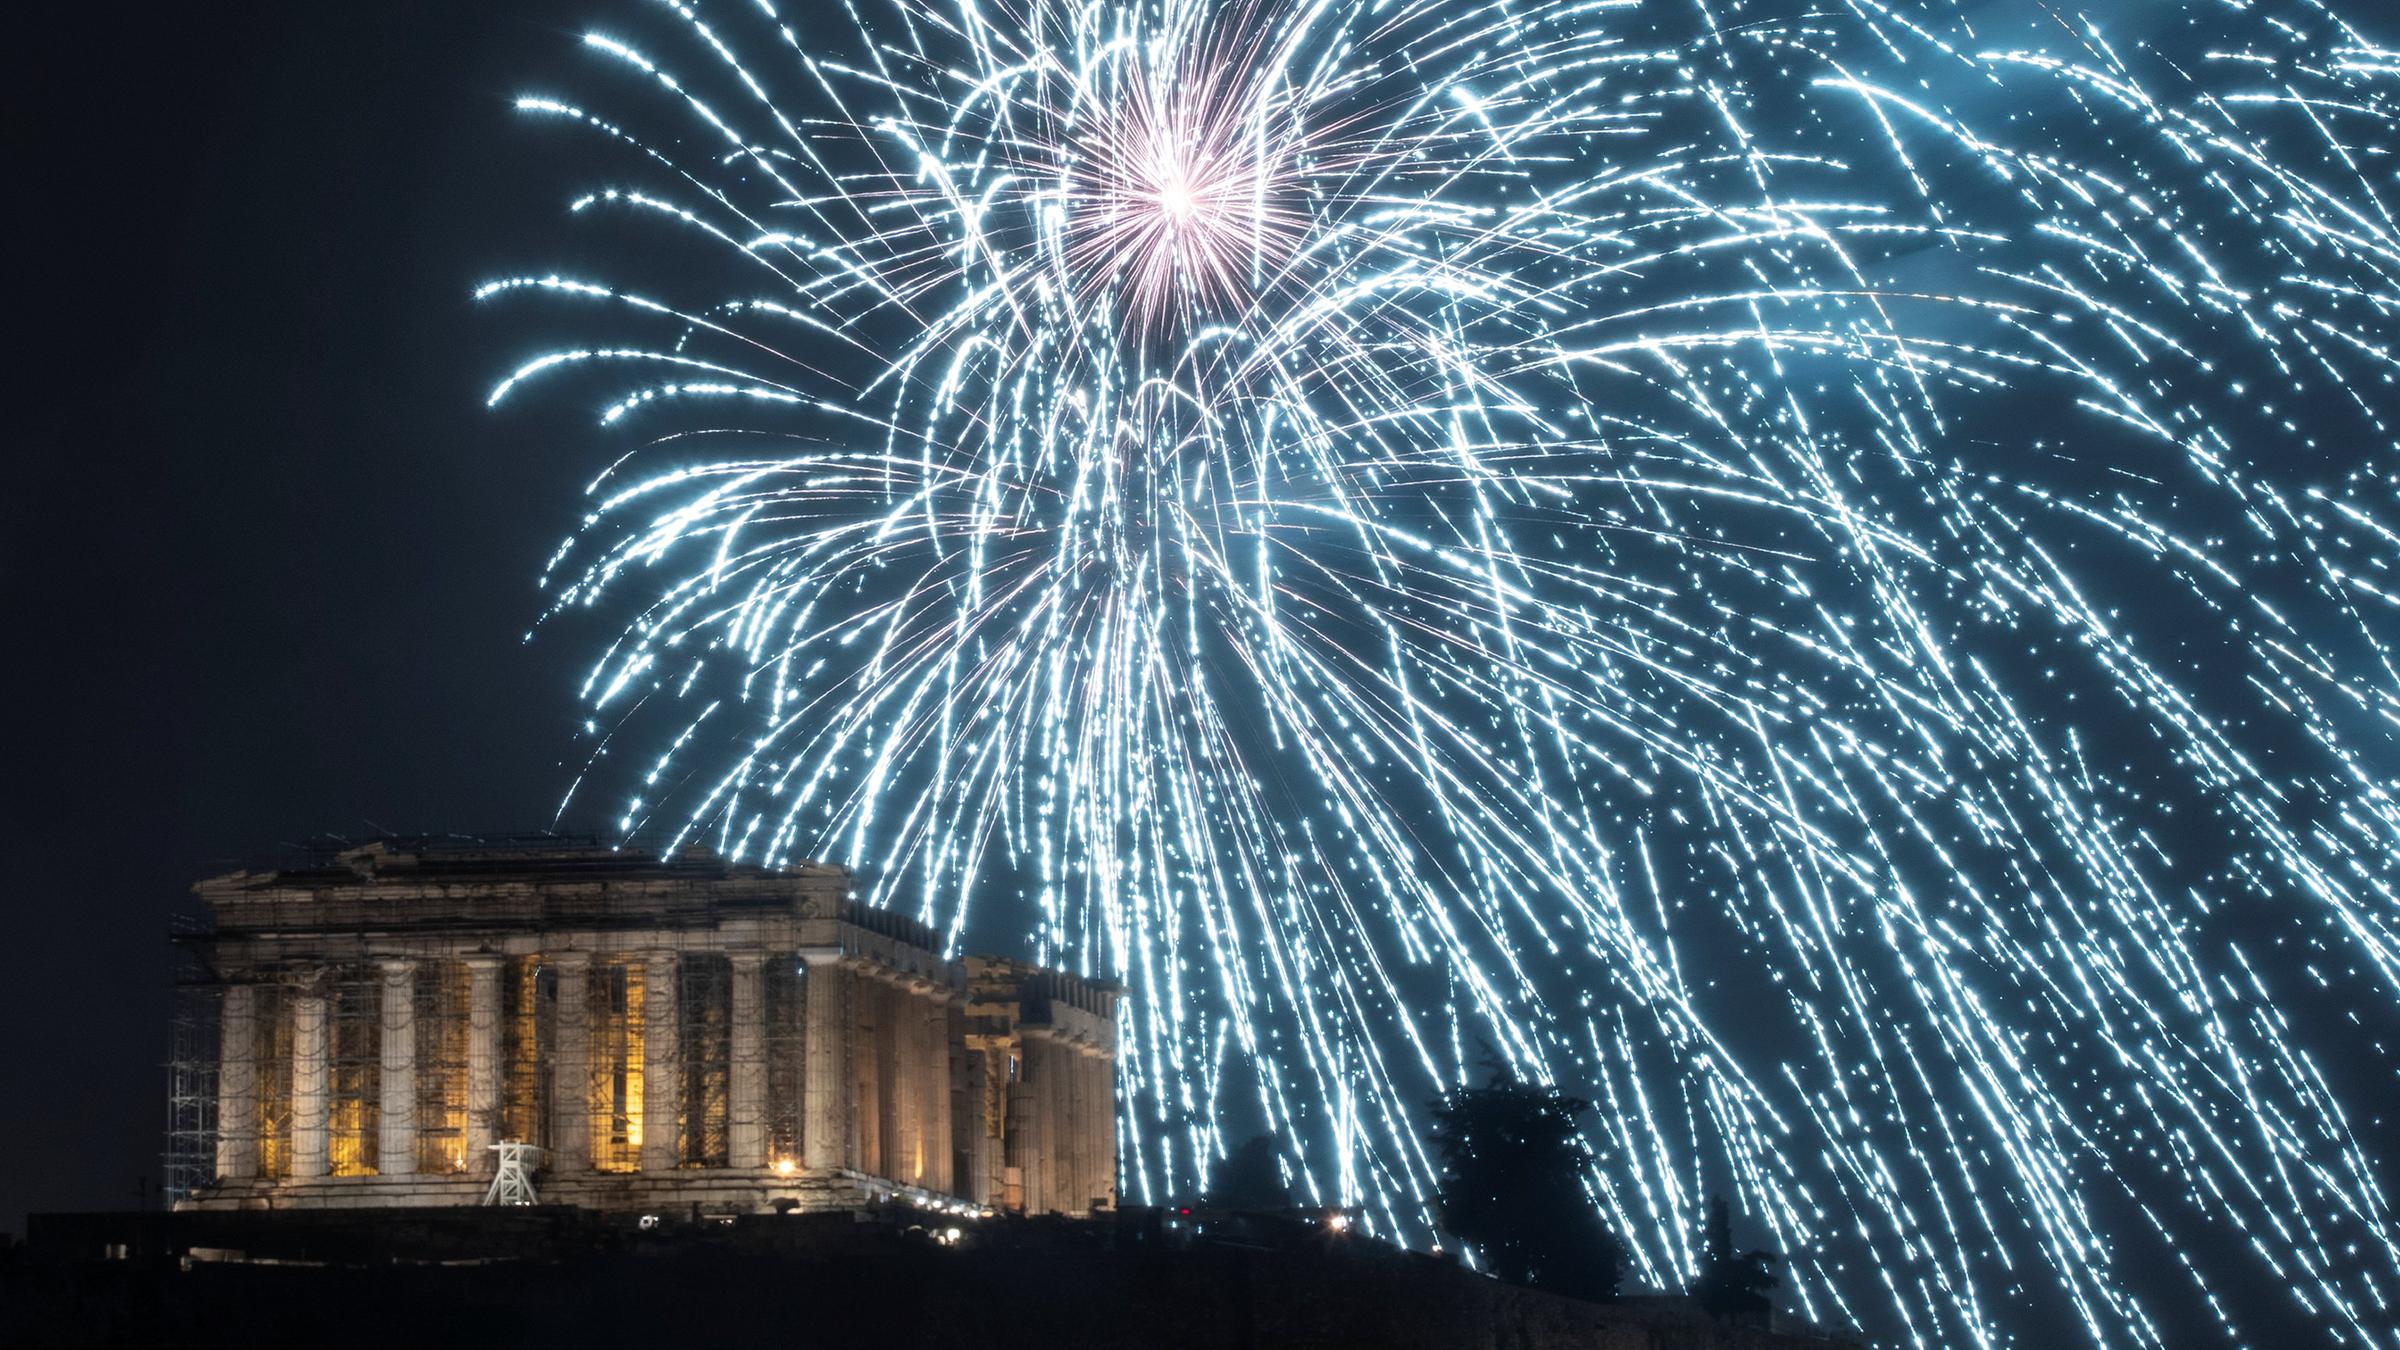 Blaues Feuerwerk über der Akropolis - so starteten die Griechen um 23 Uhr deutscher Zeit ins neue Jahr. Zuvor hatte sich der griechische Regierungschef Alexis Tsipras zuversichtlich gezeigt, dass seine Landleute im neuen Jahr bessere Zeiten erleben werden.